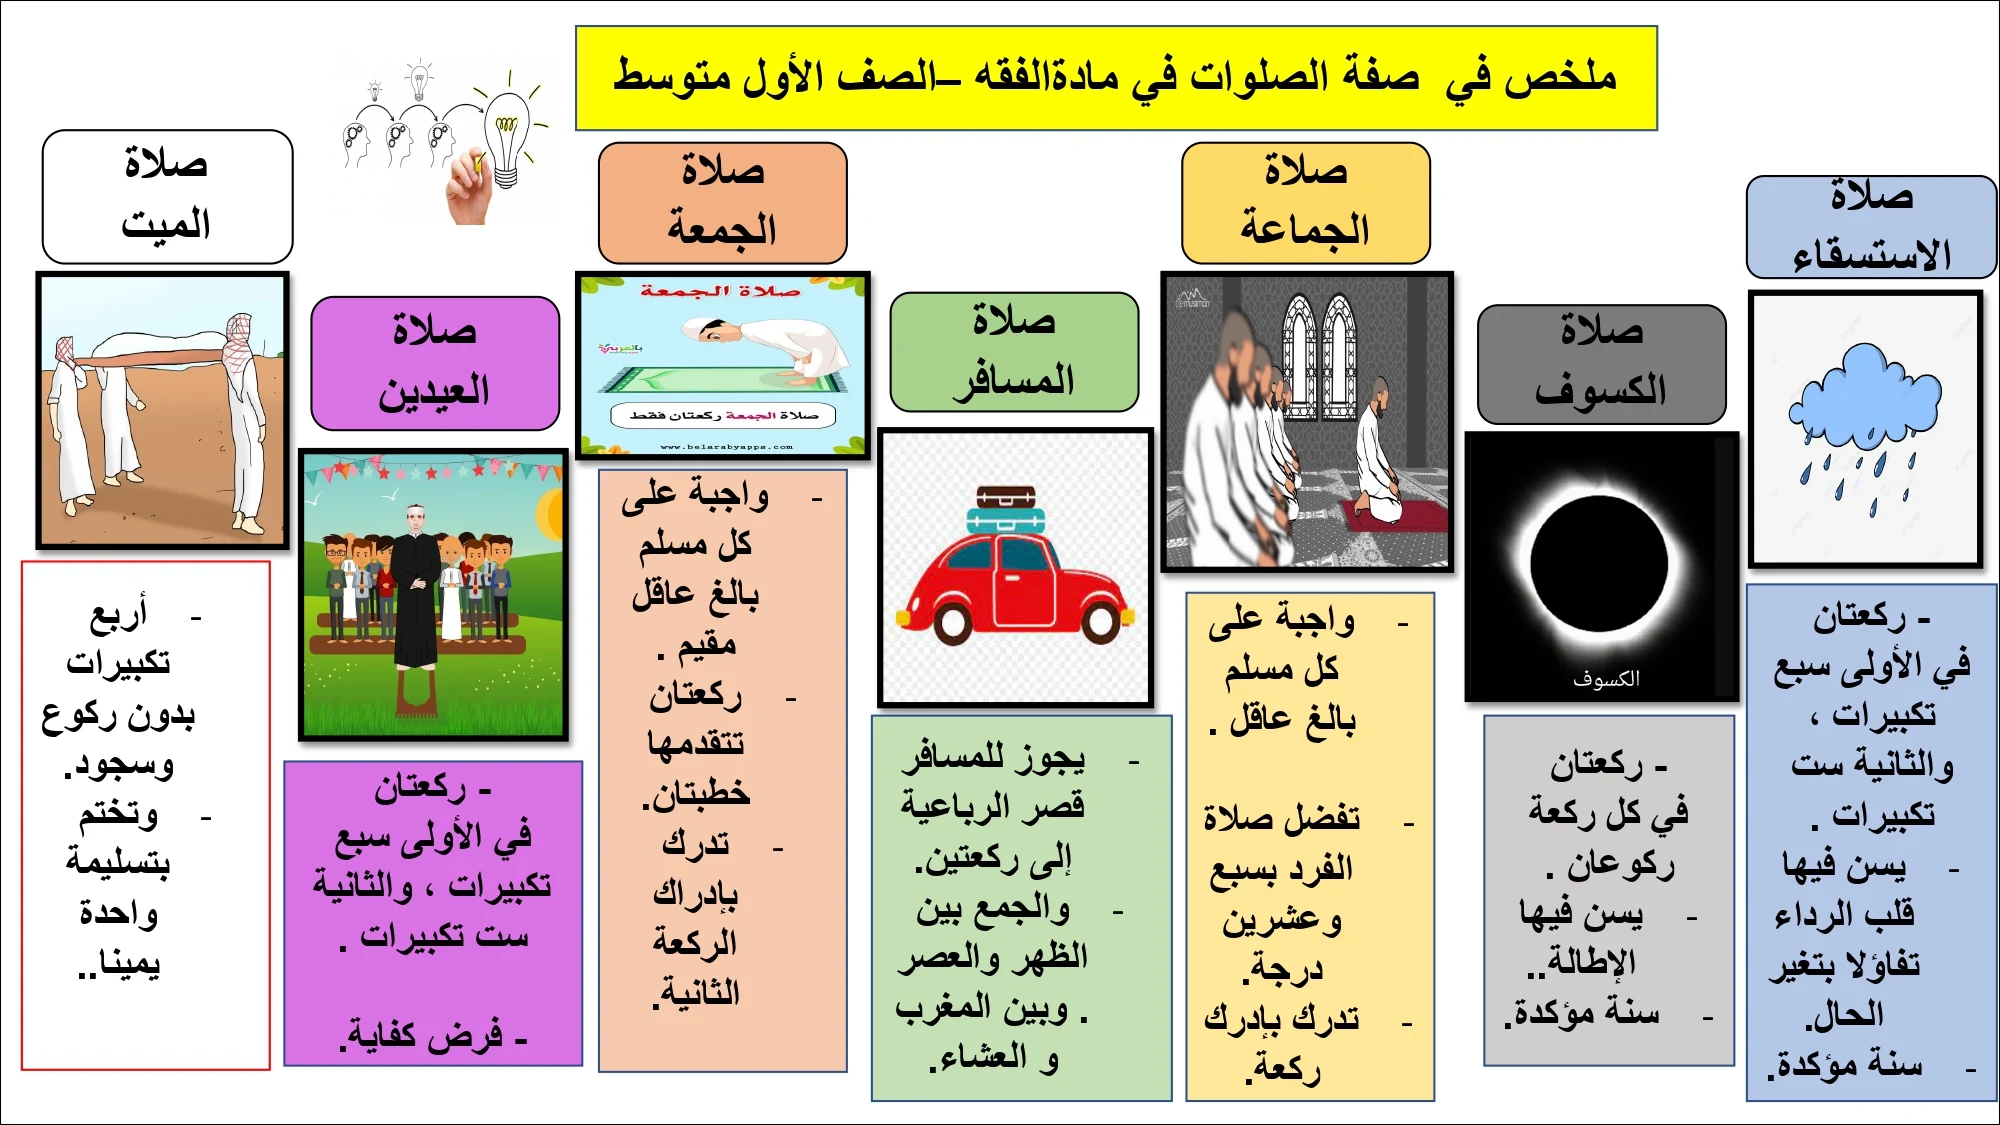 أوراق عمل لمادة التربية الإسلامية الصف الأول متوسط الفصل الدراسي الثالث pdf تحميل مباشر مجاني